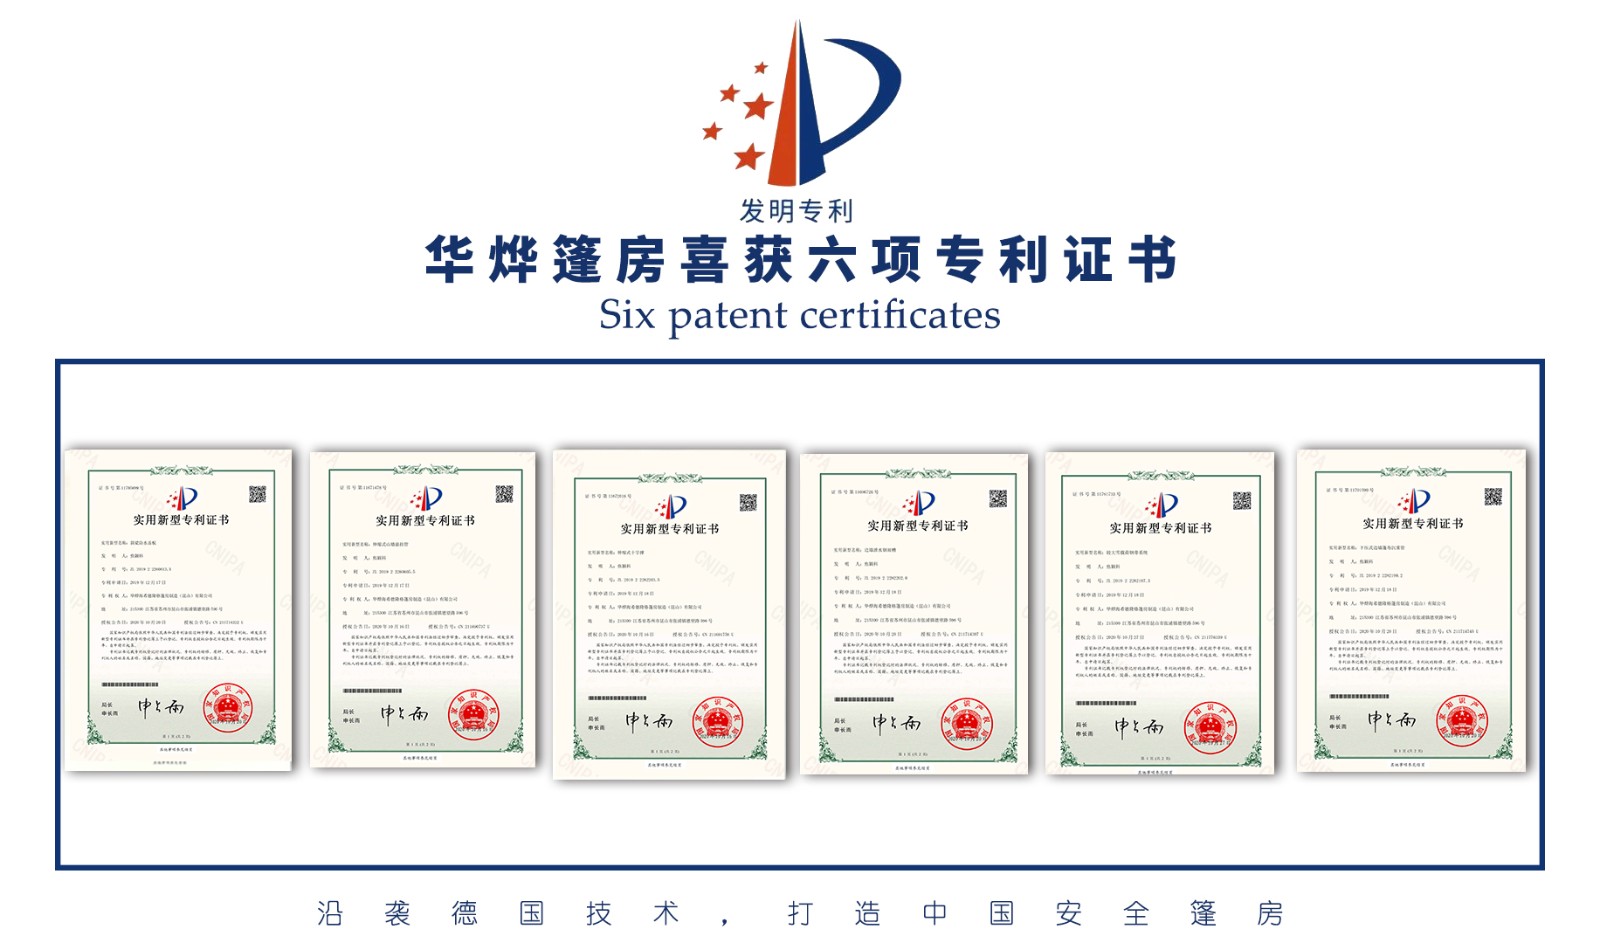 華燁篷房生產廠家再獲6項實用新型專利證書